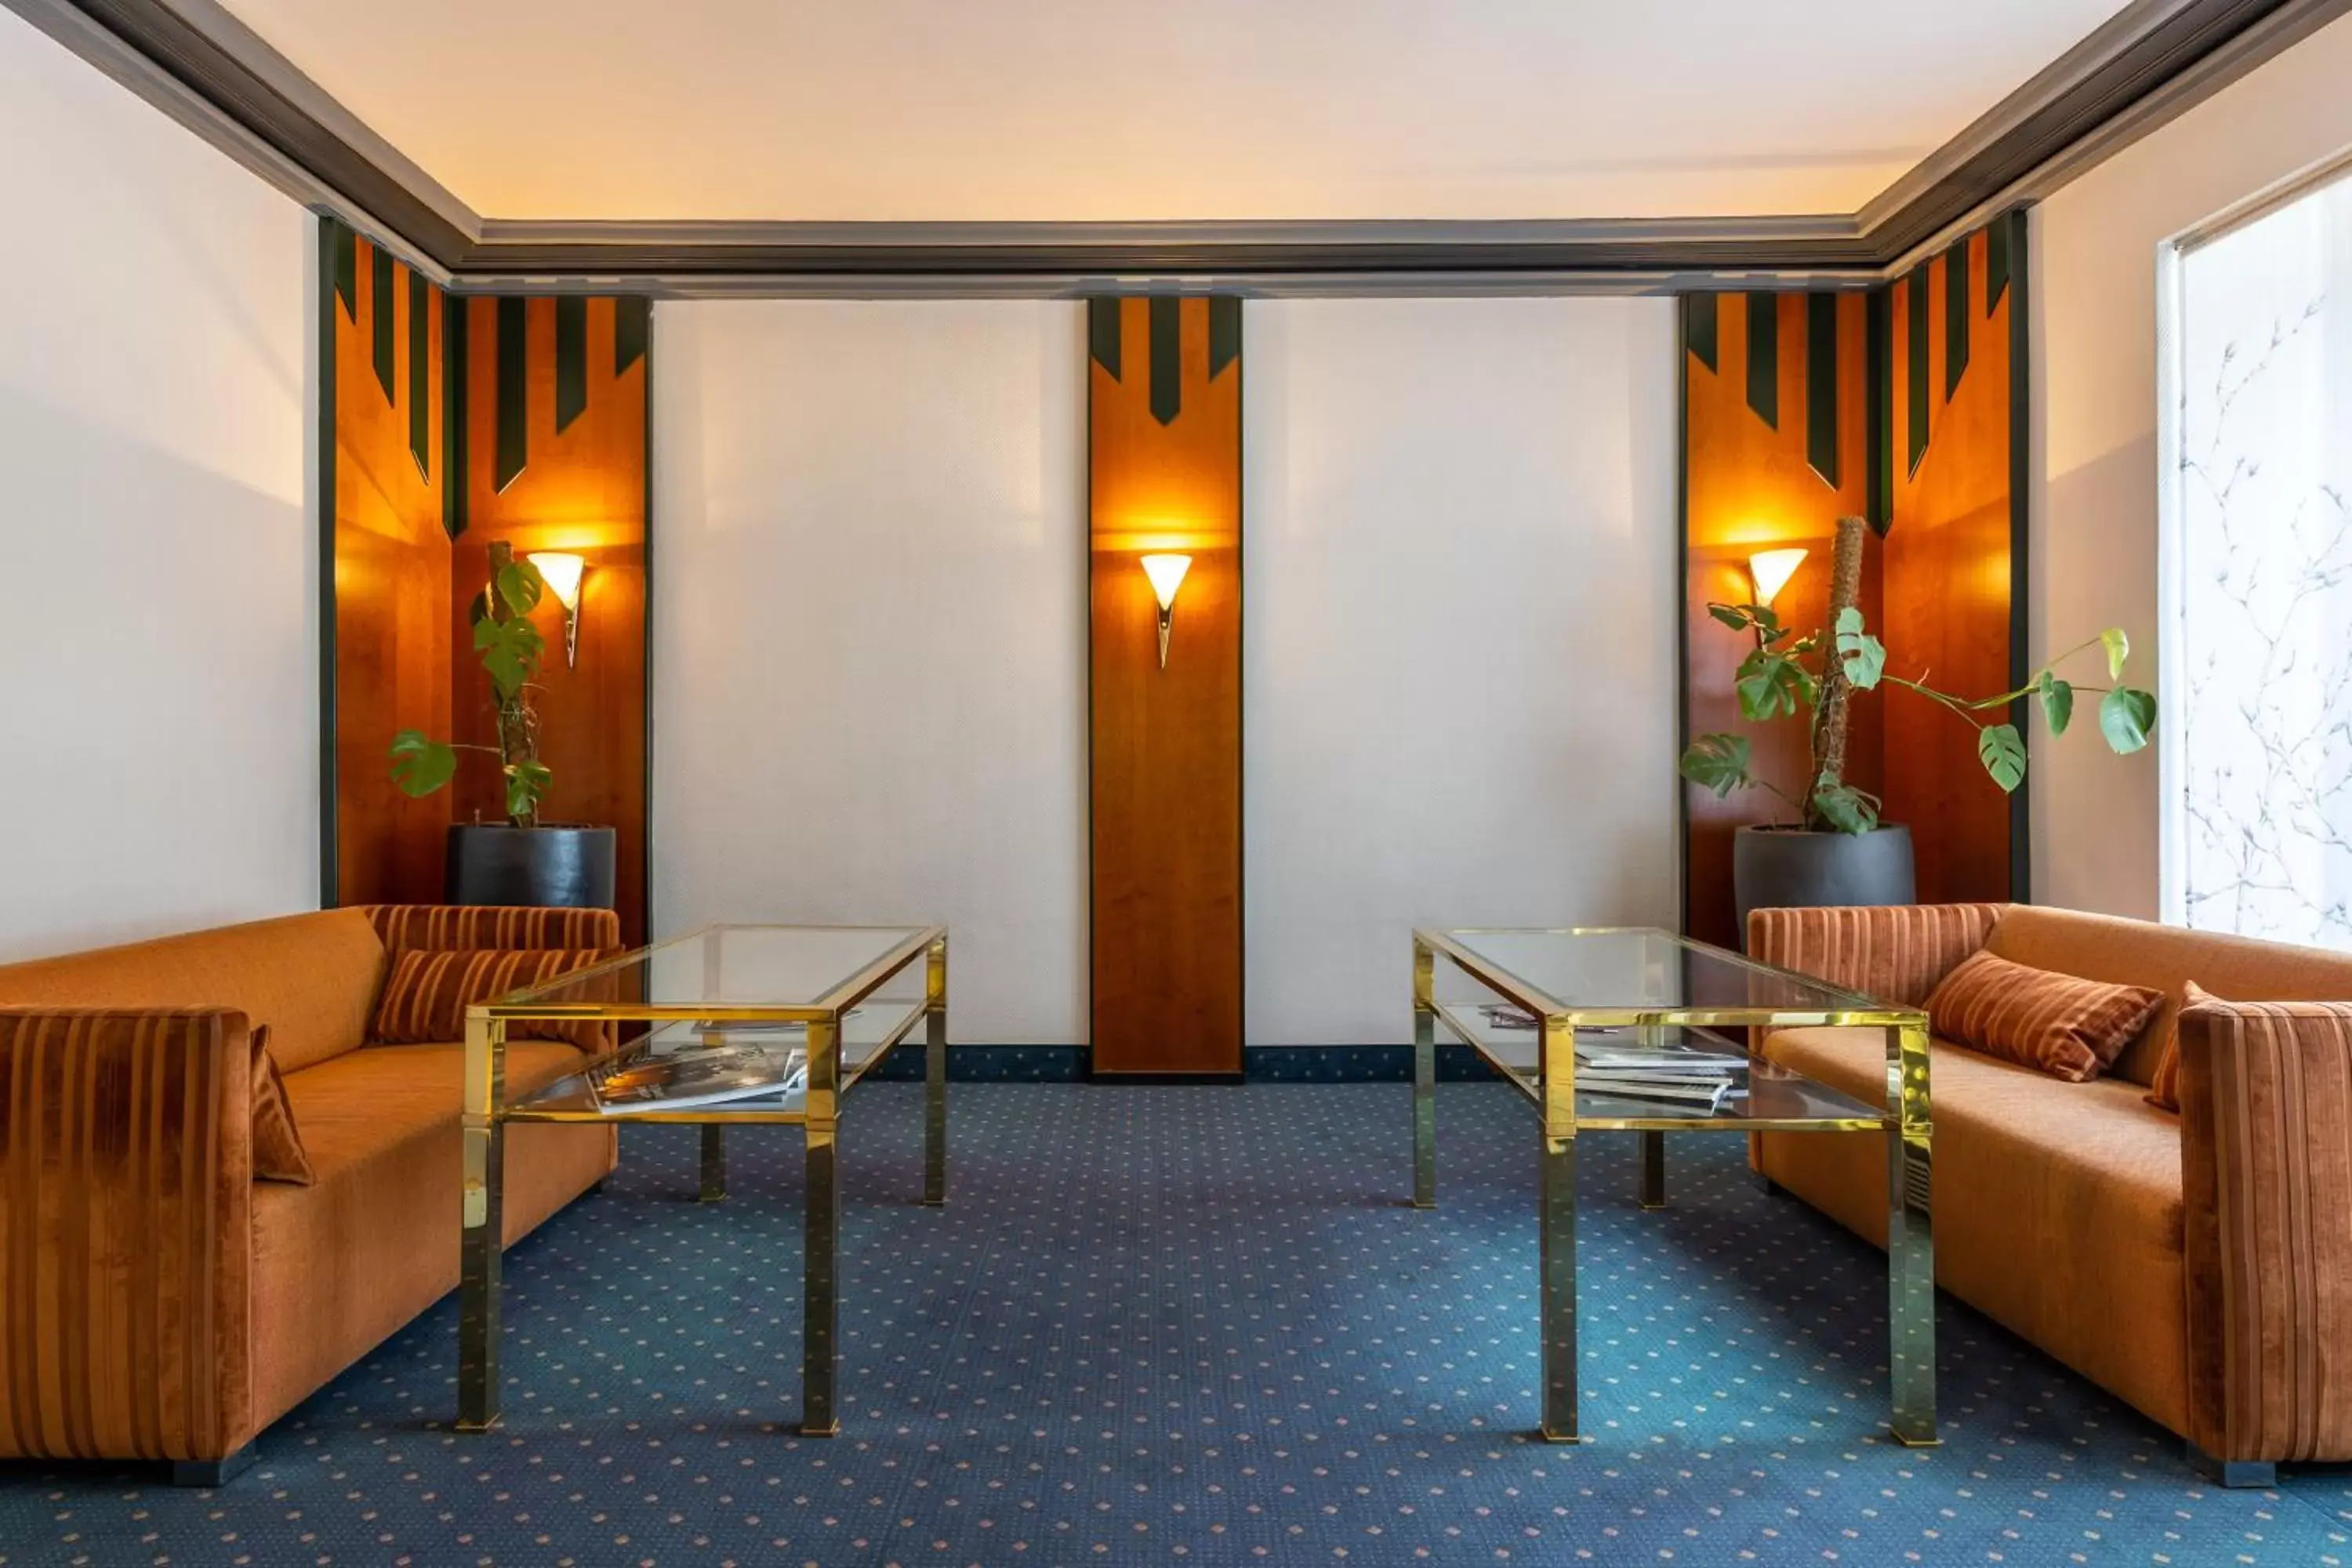 Lobby or reception in Trip Inn Hotel Esplanade